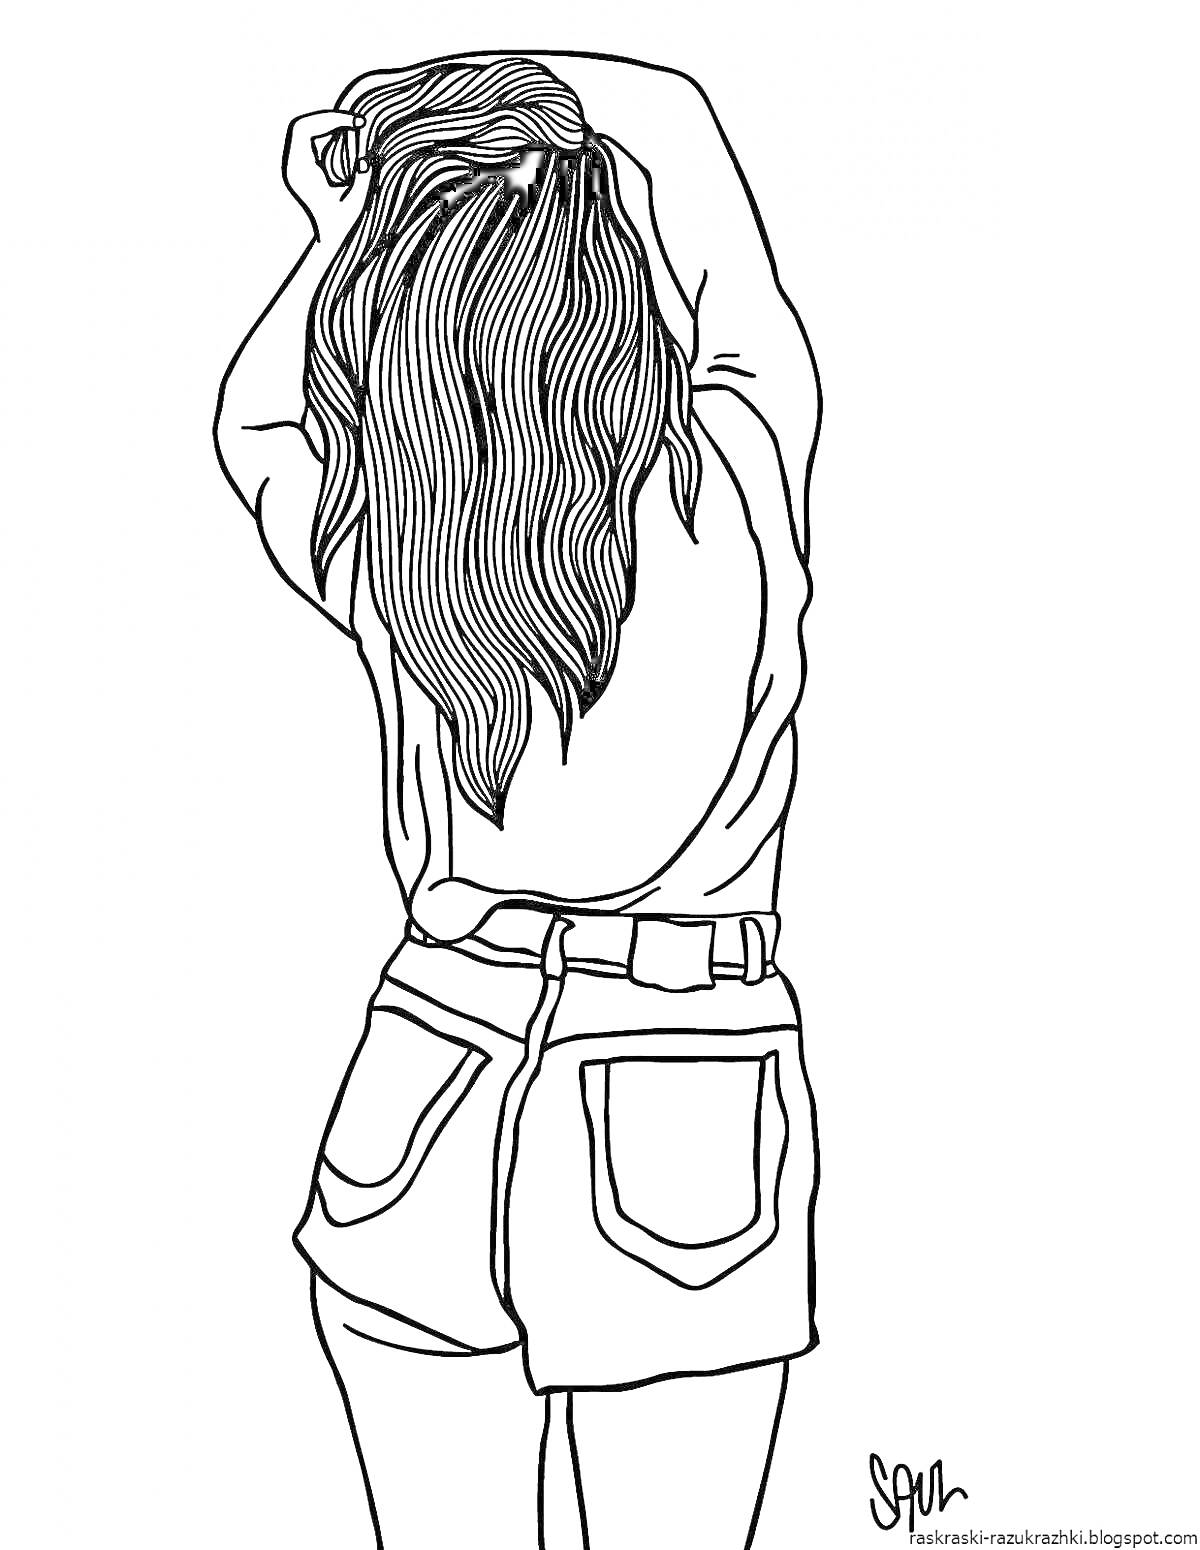 Девушка с длинными волосами и высокими шортами, стоящая спиной